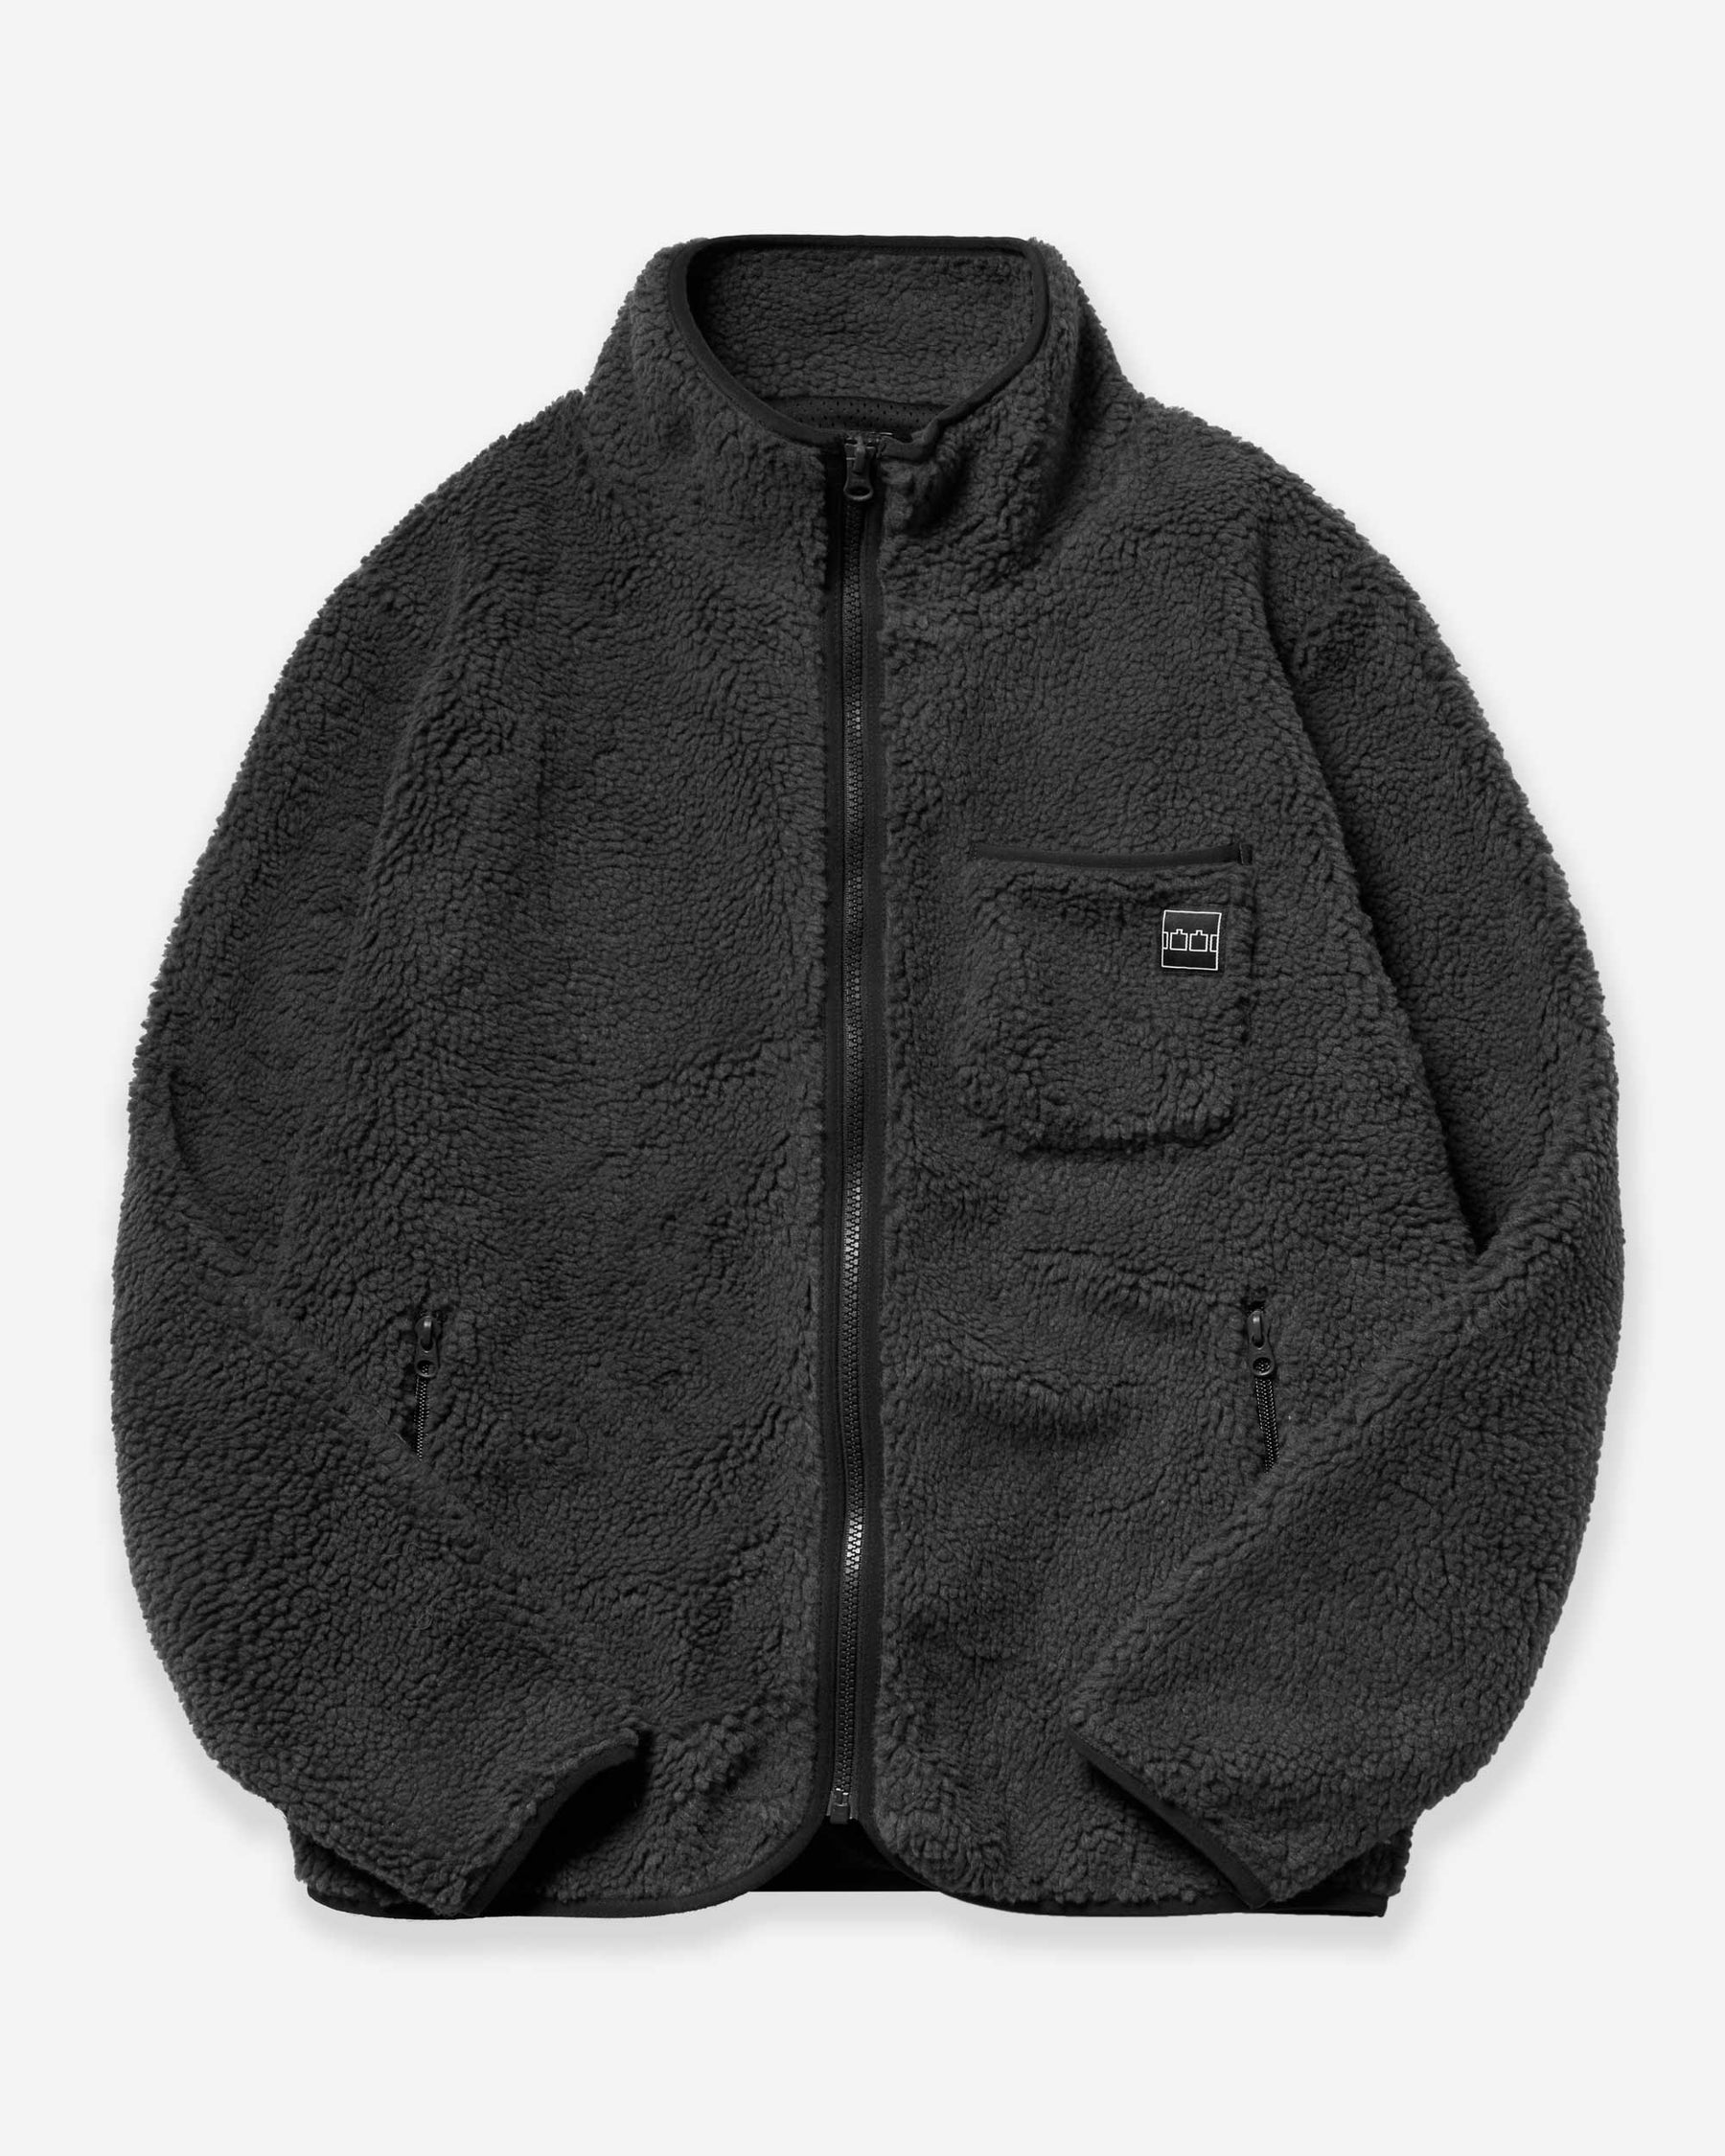 Zip Fleece - Charcoal/ Black